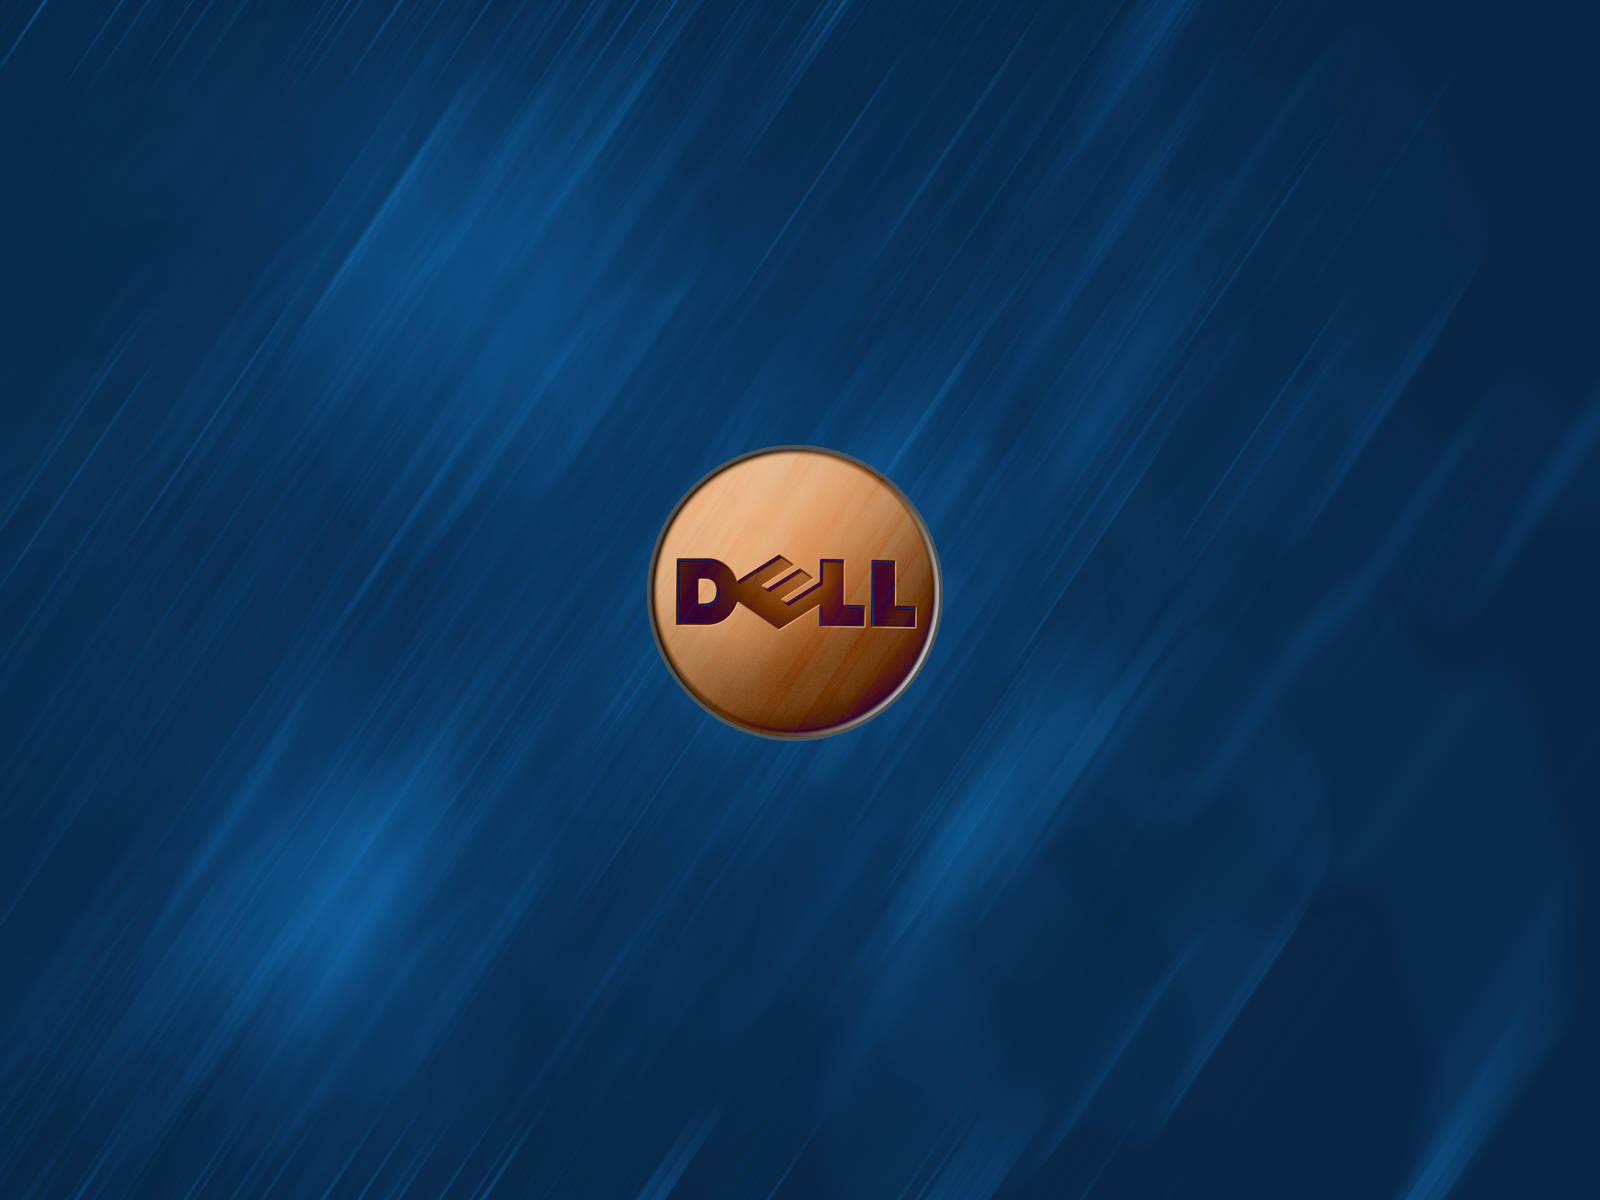 Logohd De Dell En Madera. Fondo de pantalla